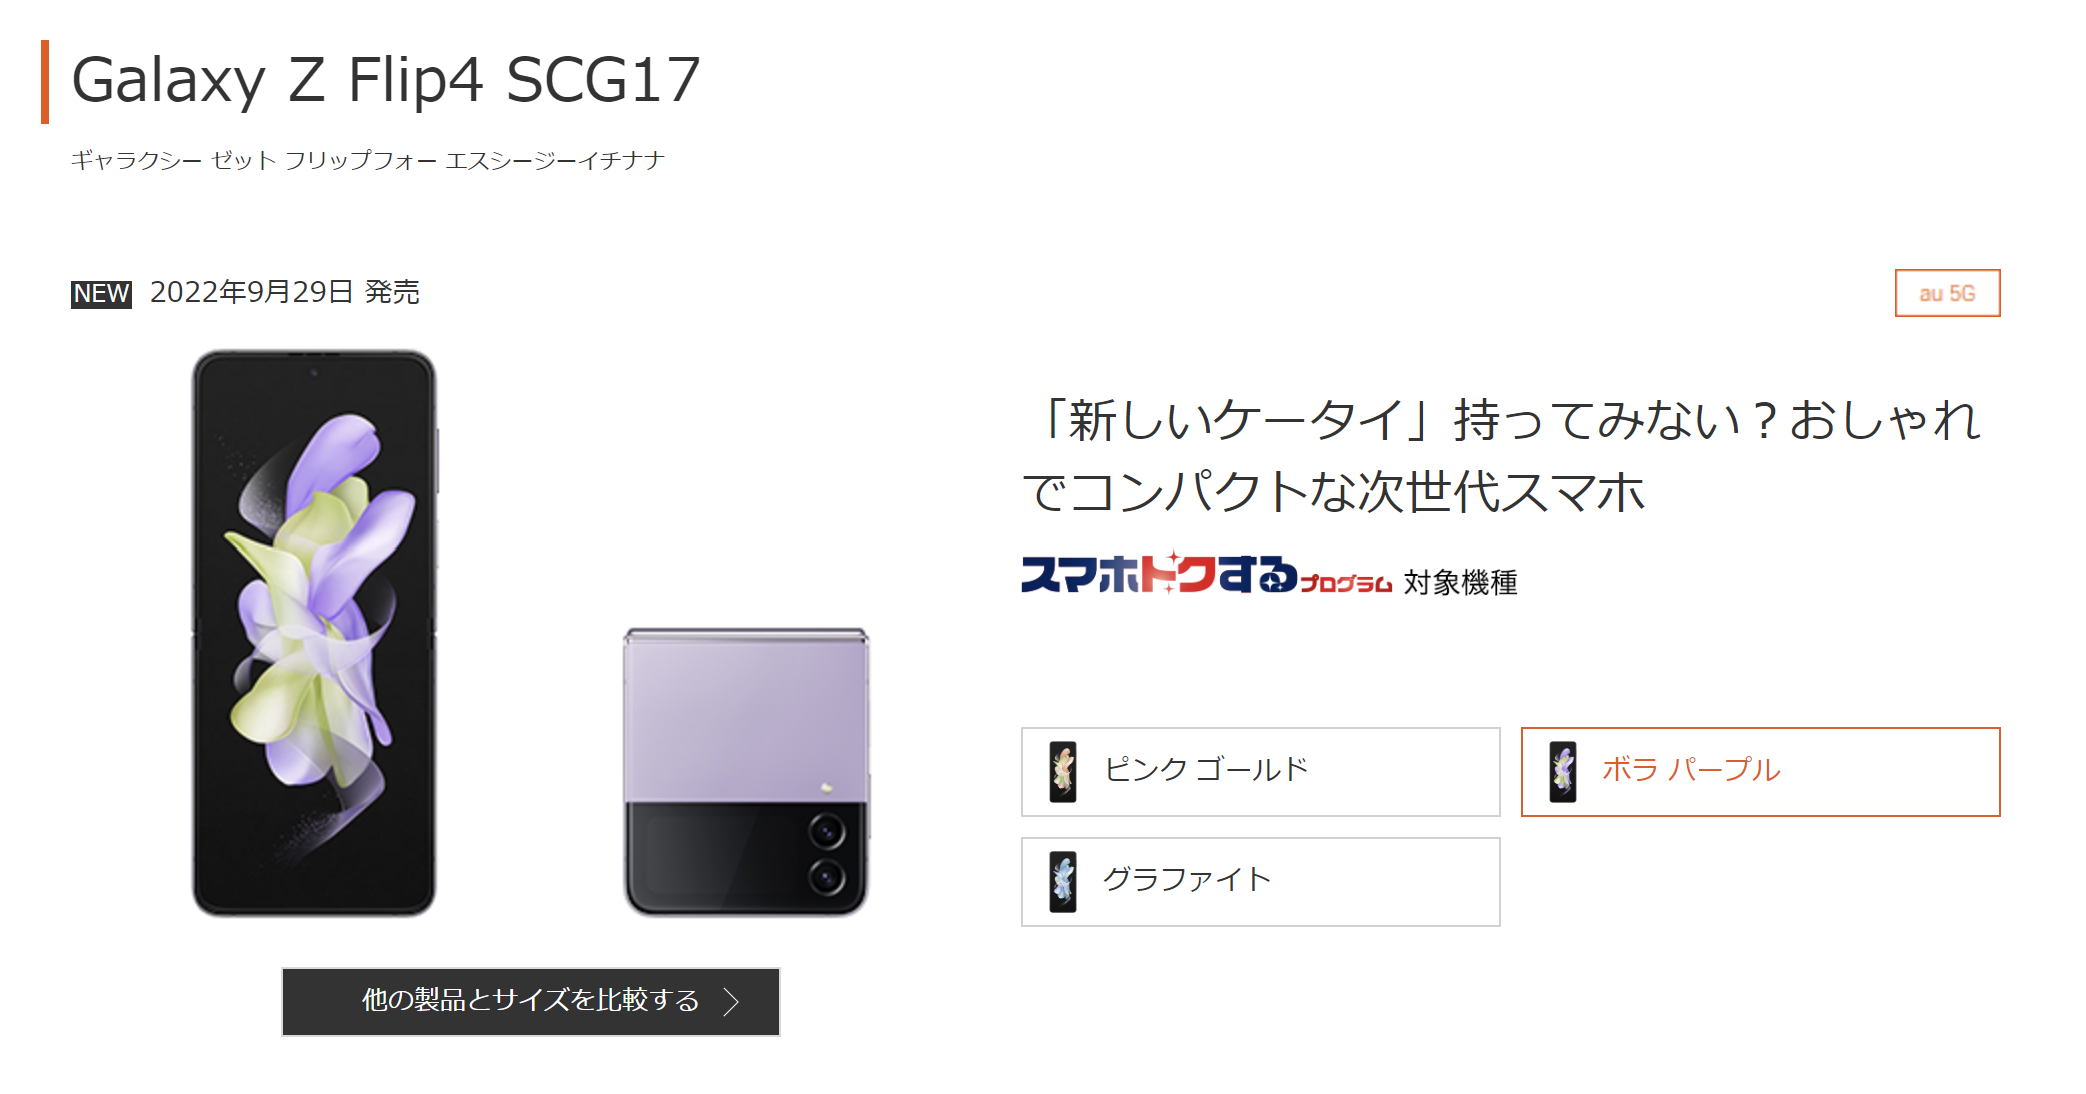 au Galaxy Z Flip4 SCG17 (auオンラインショップ)